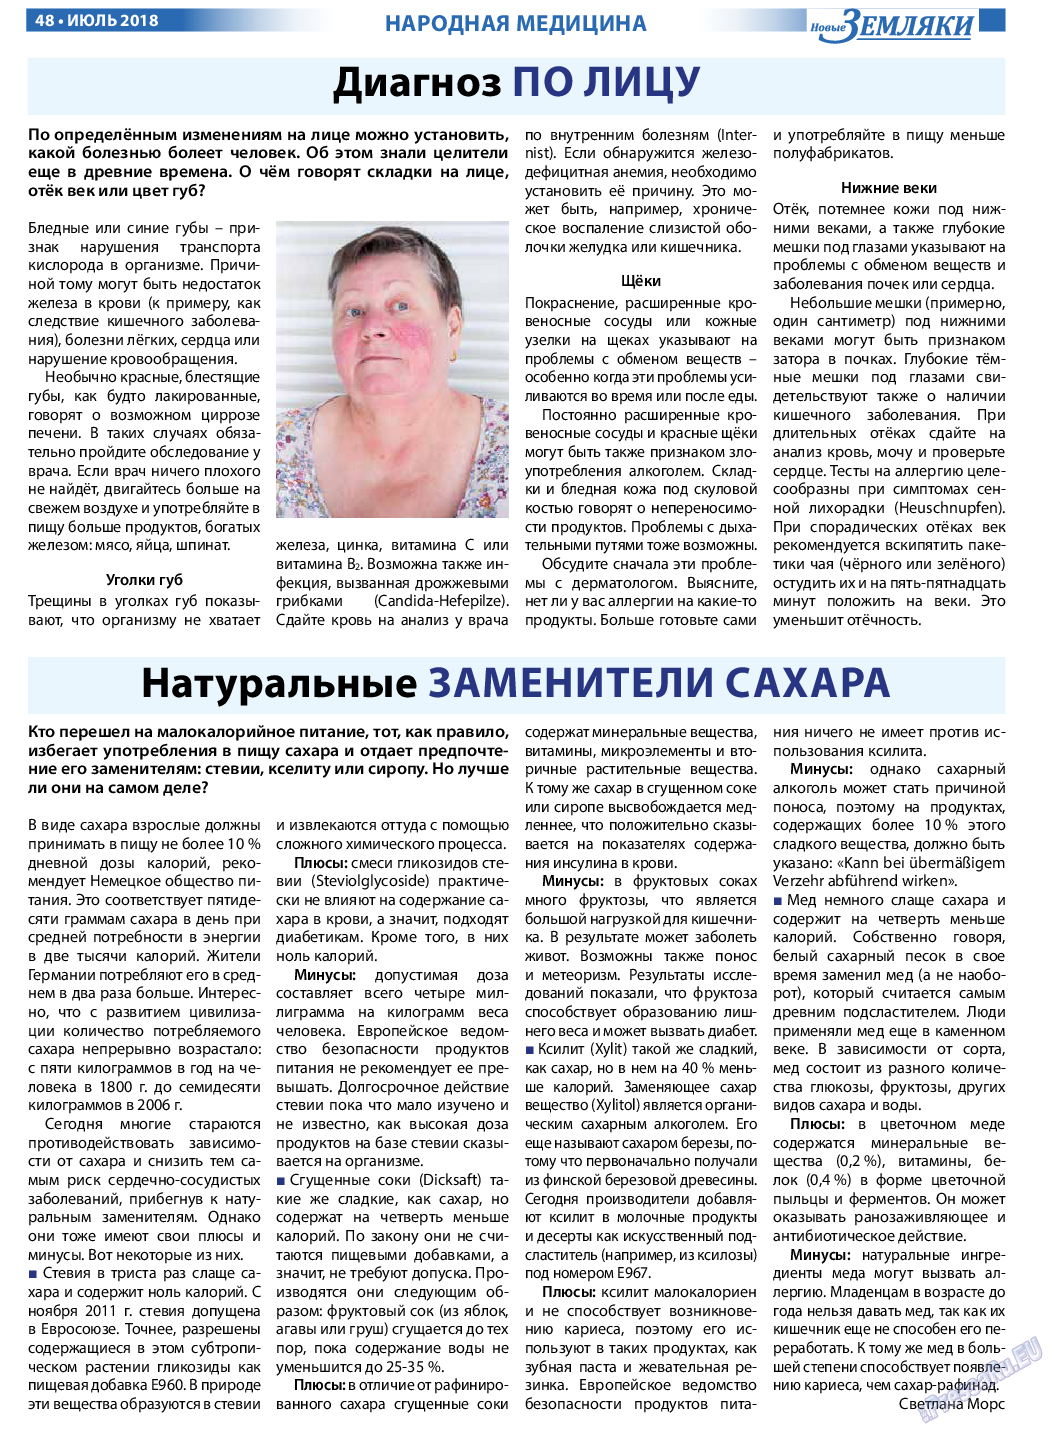 Новые Земляки (газета). 2018 год, номер 7, стр. 48